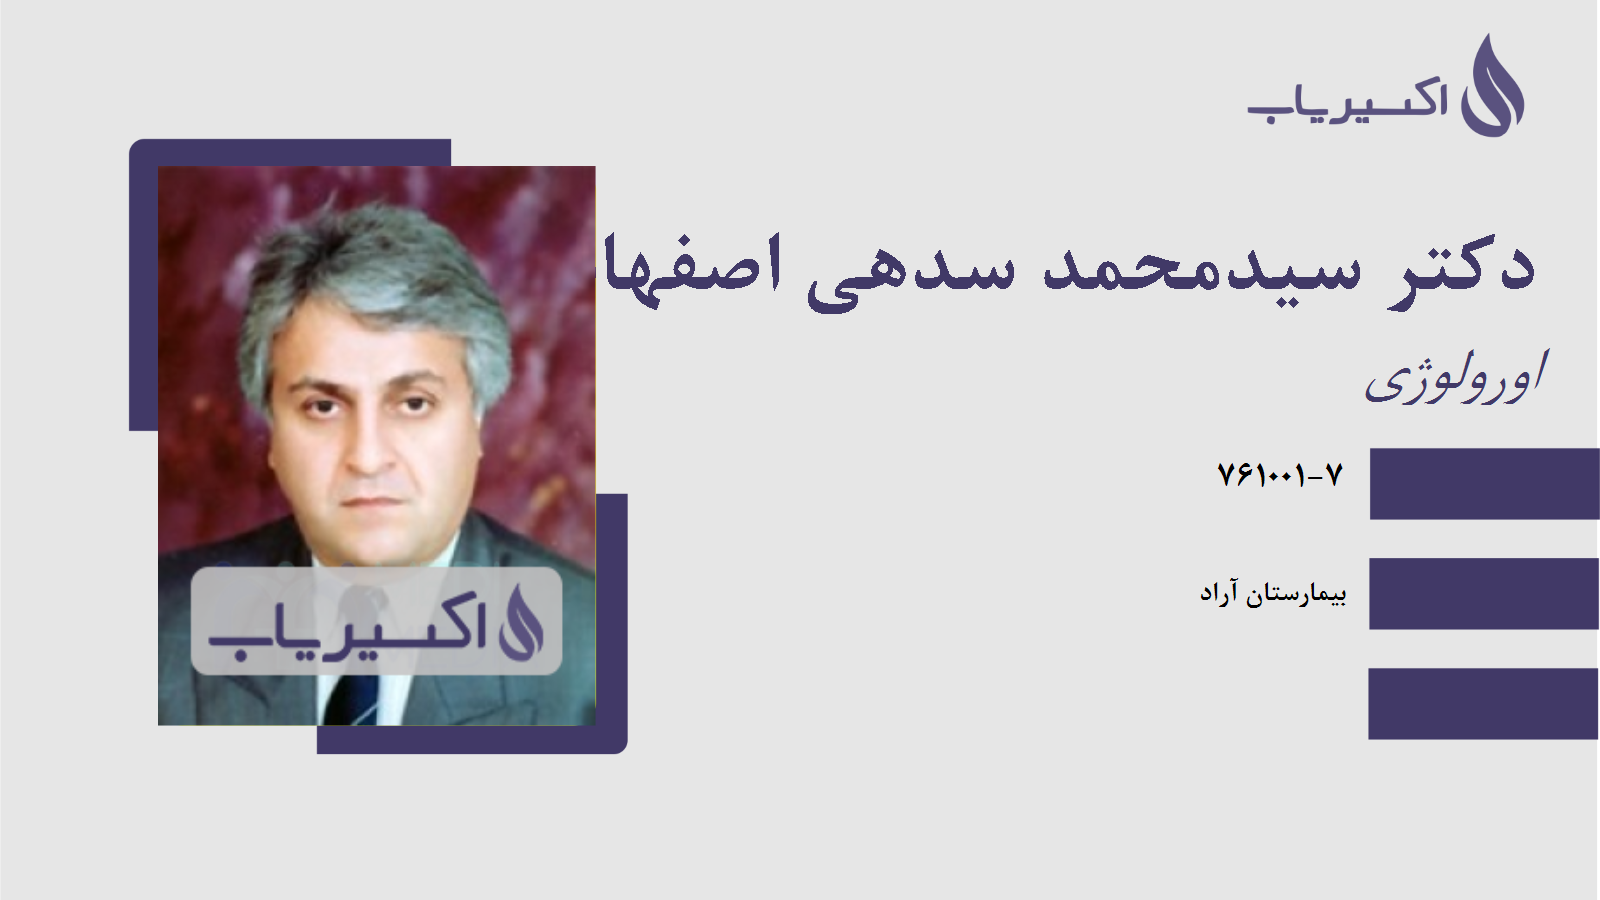 مطب دکتر سیدمحمد سدهی اصفهانی